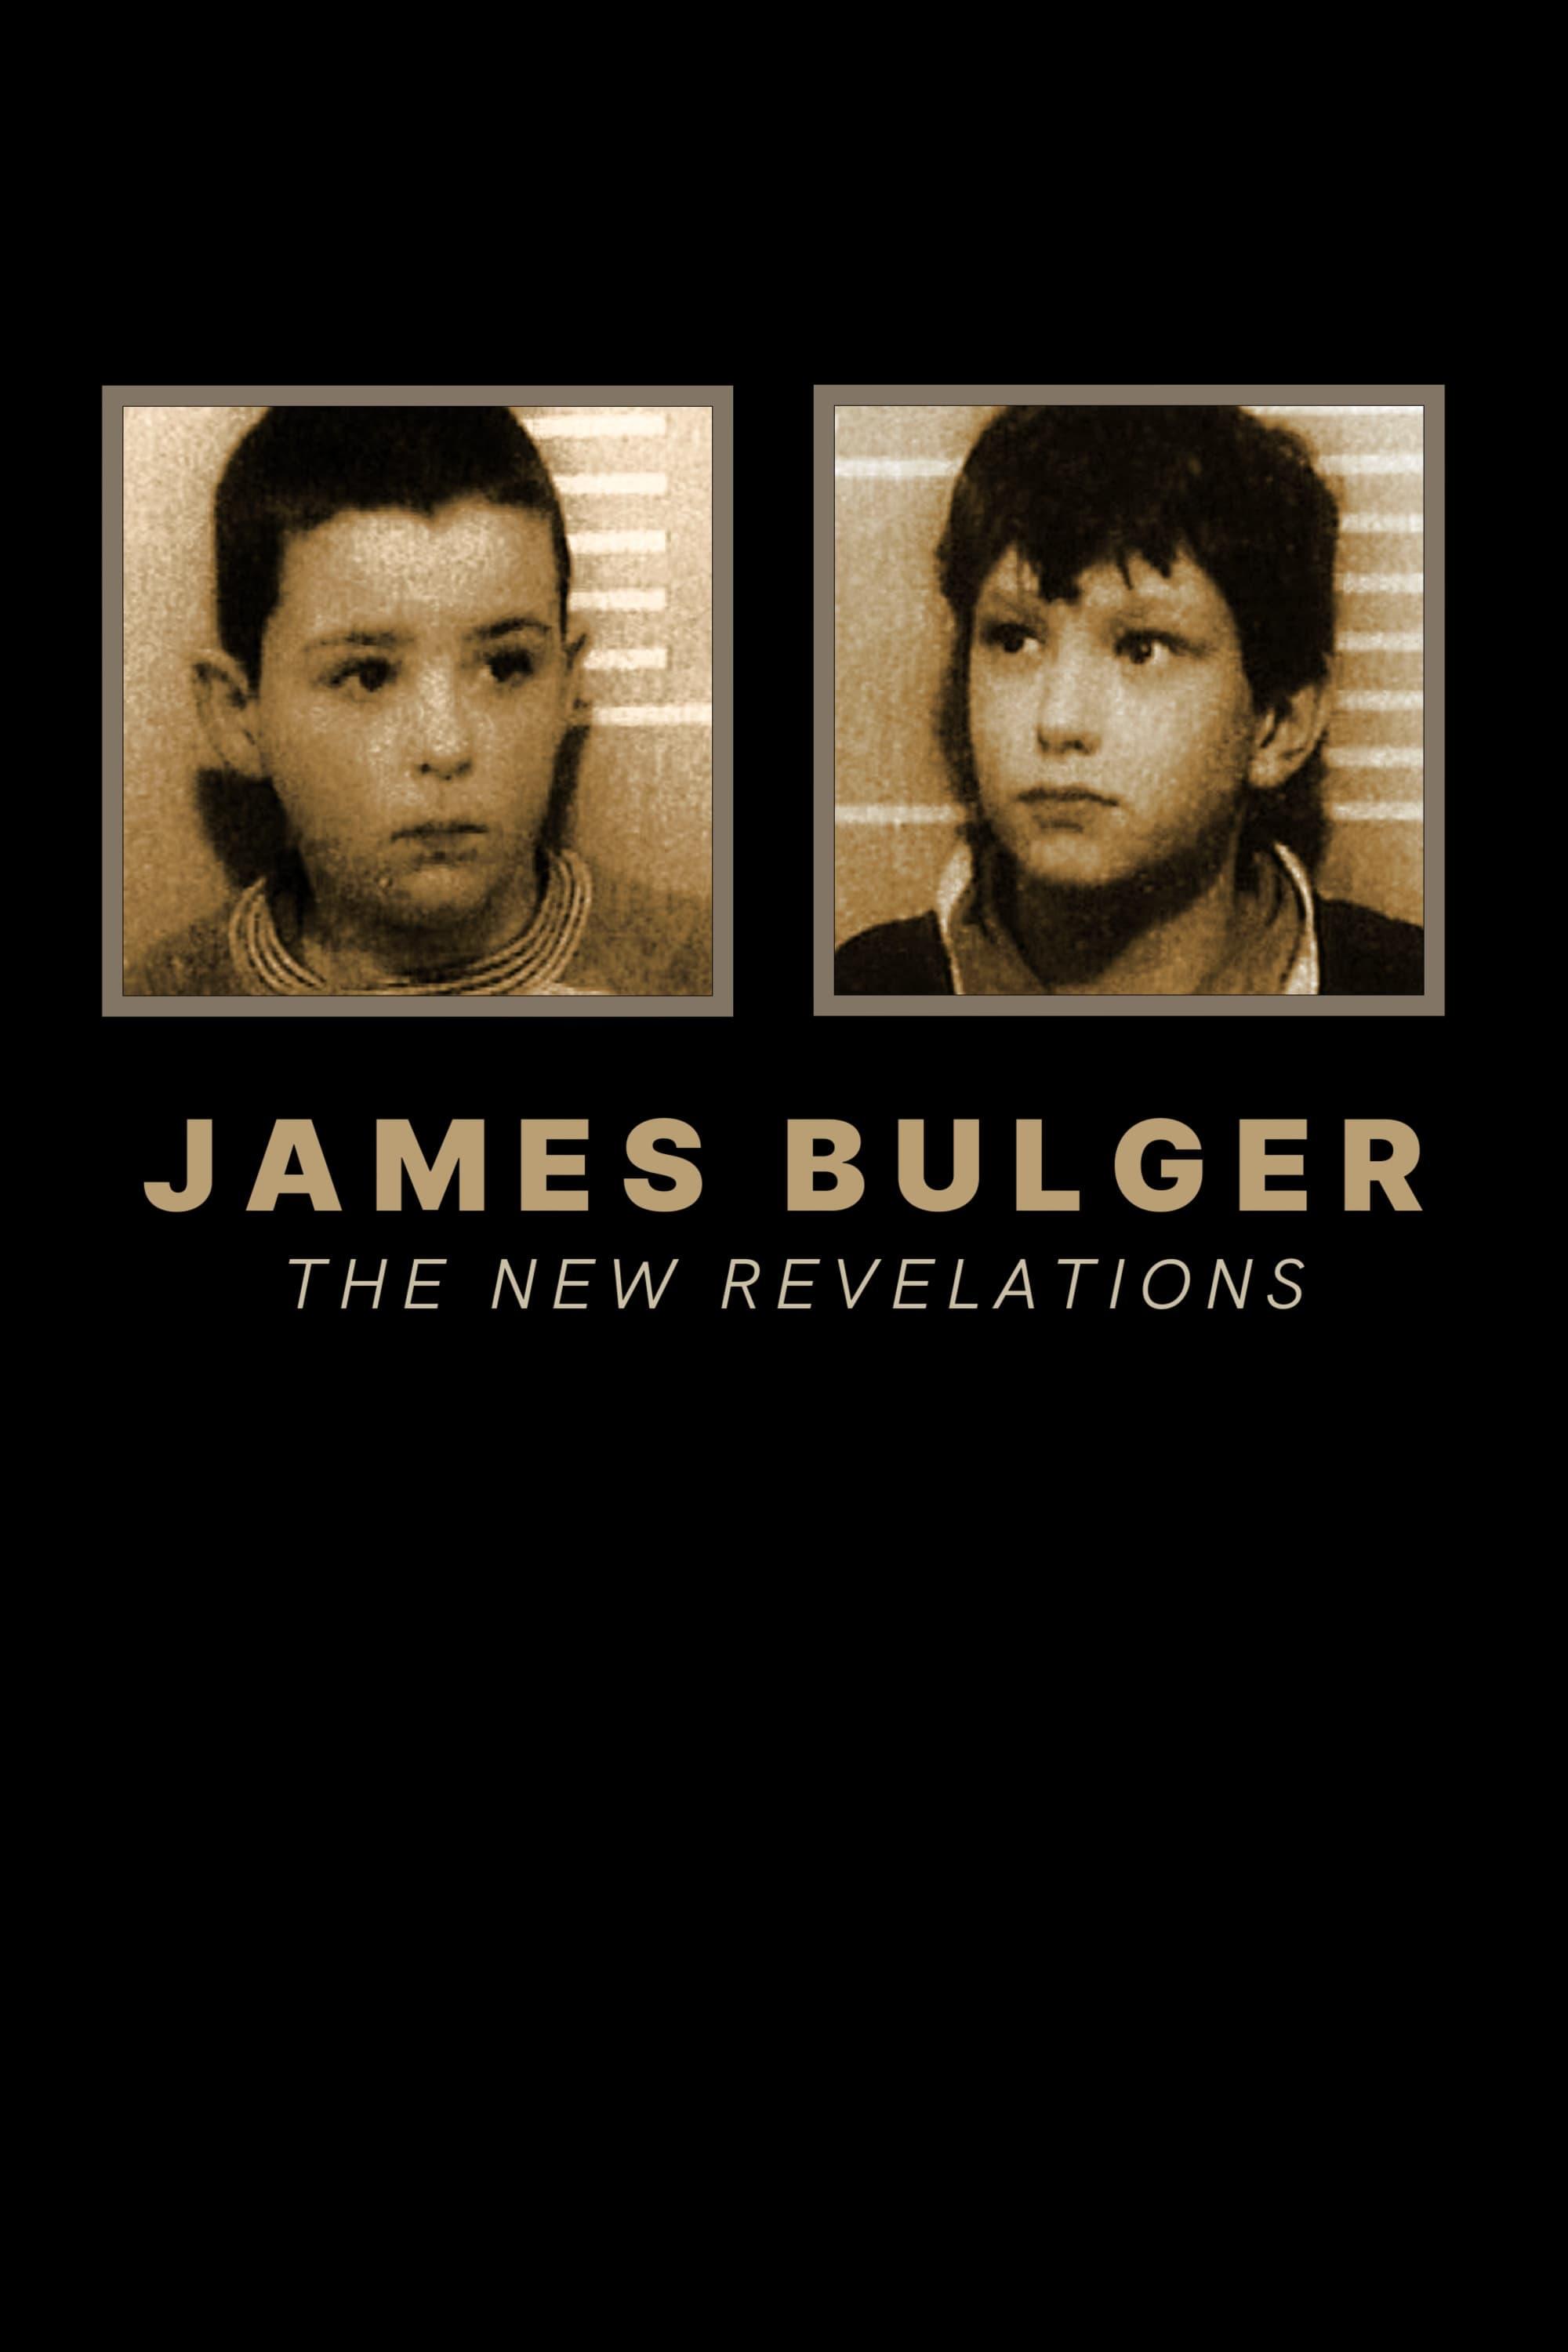 James Bulger: The New Revelations poster